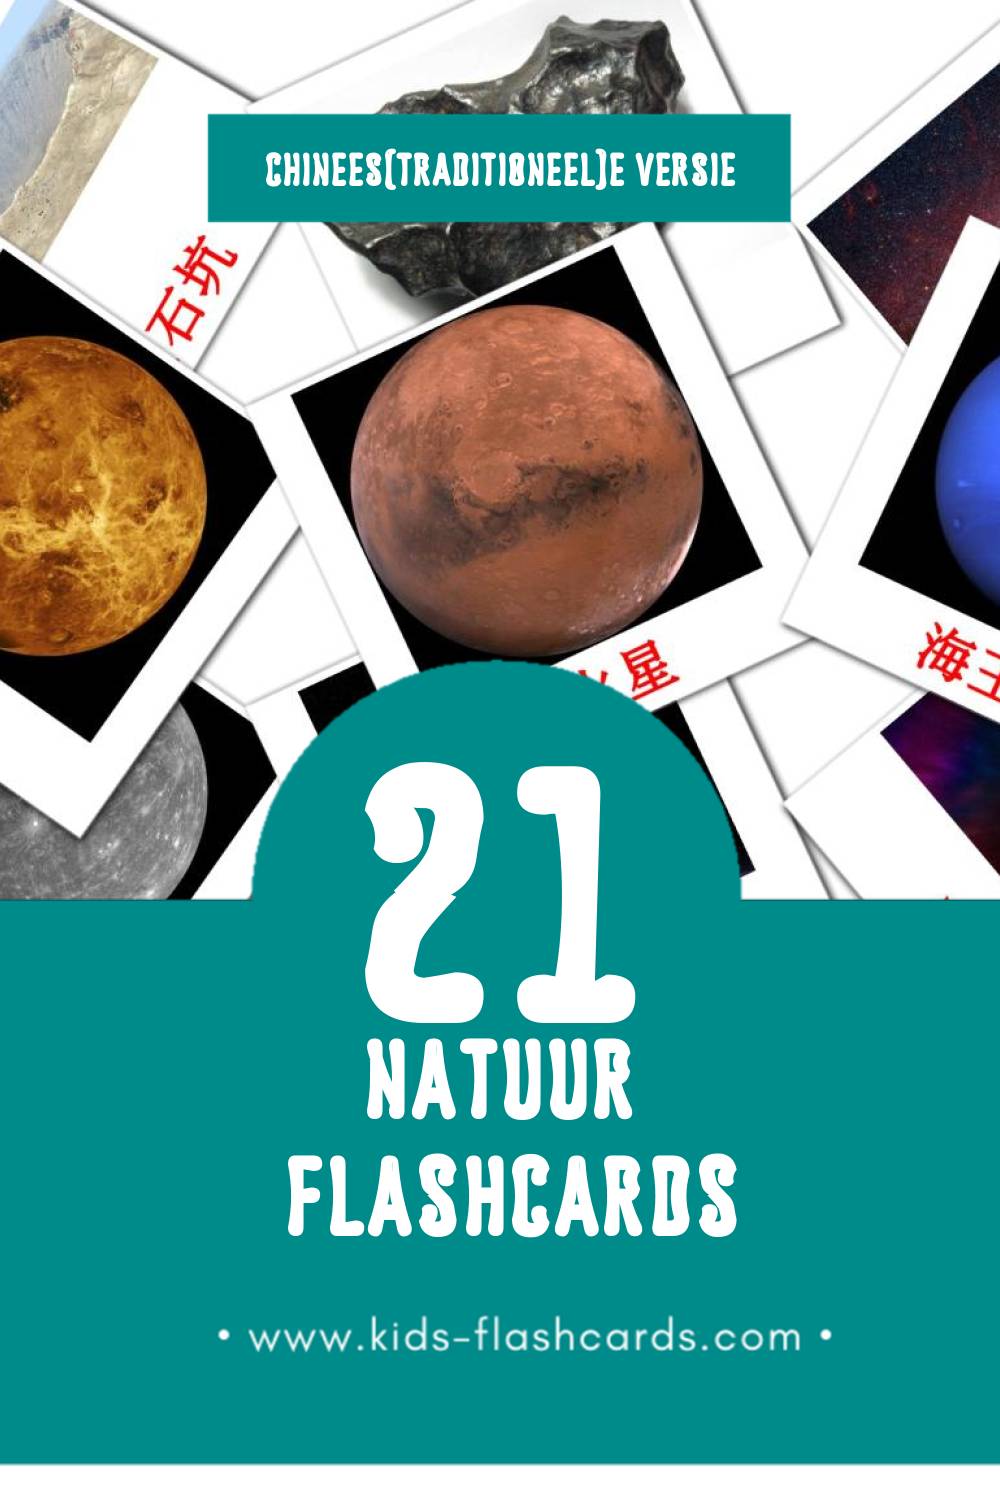 Visuele 自然 Flashcards voor Kleuters (21 kaarten in het Chinees(traditioneel))